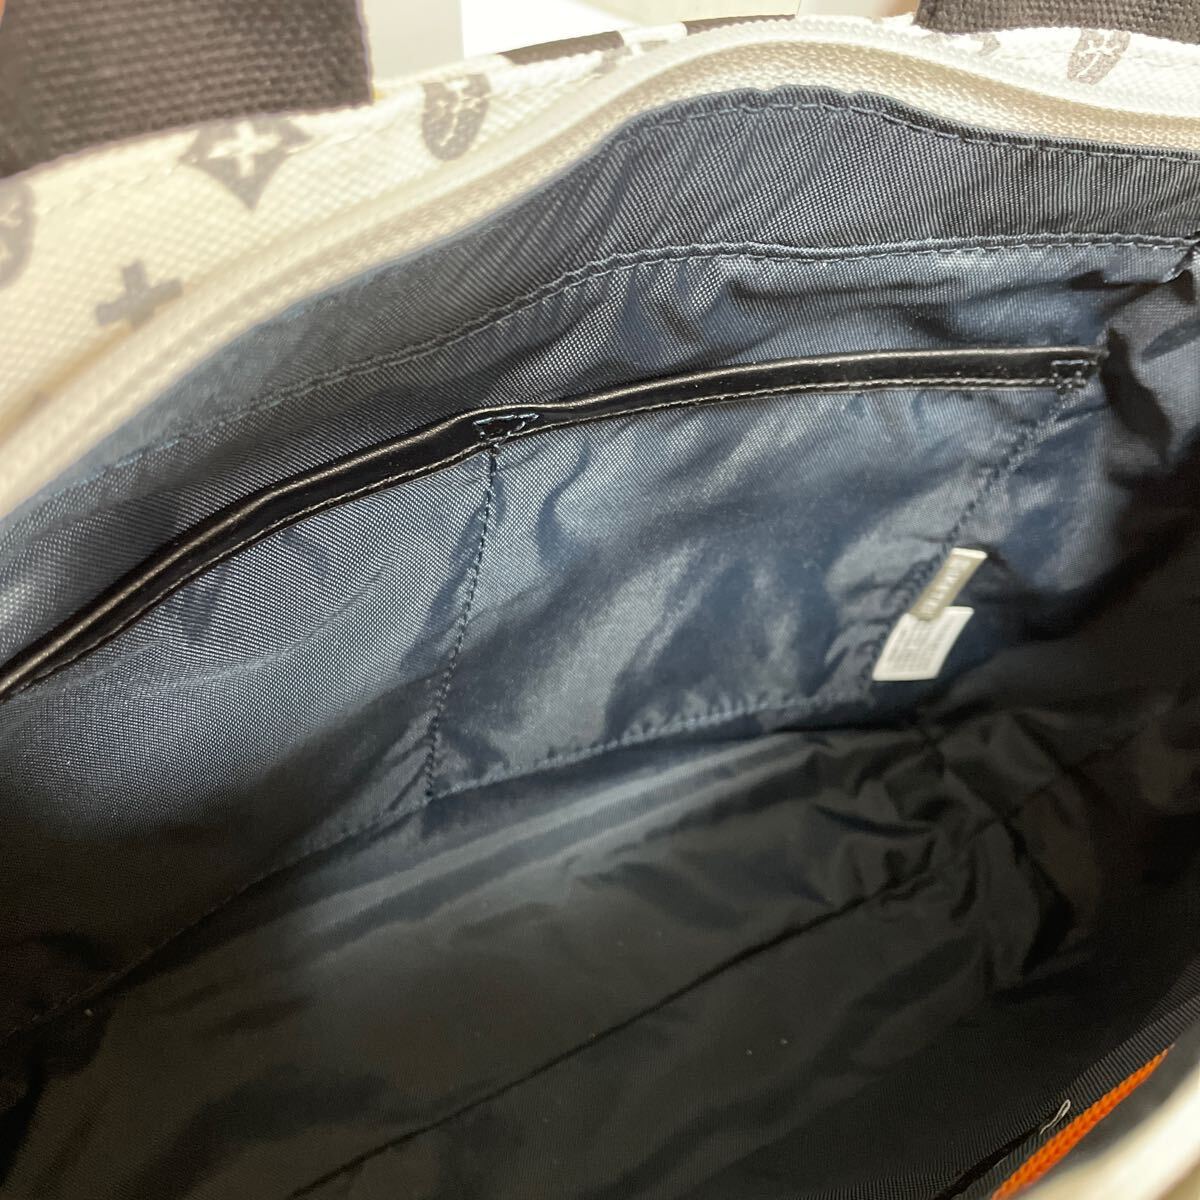 A новый товар Castelbajac большая сумка обычная цена 15,180 иен монограмма колено s белый 038511E